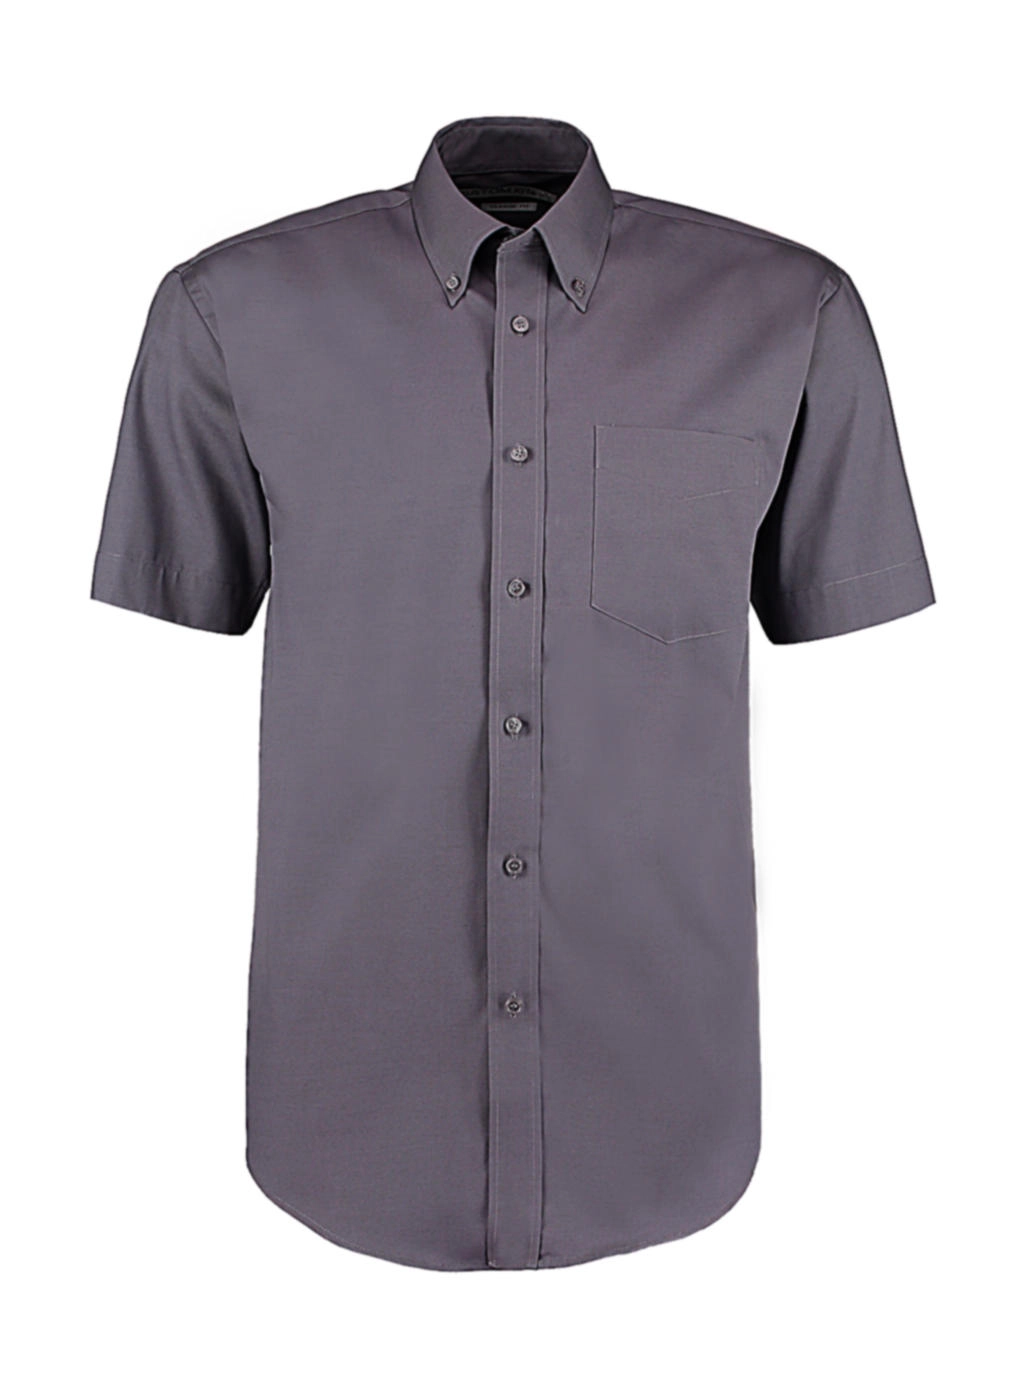 Classic Fit Premium Oxford Shirt SSL zum Besticken und Bedrucken in der Farbe Charcoal mit Ihren Logo, Schriftzug oder Motiv.